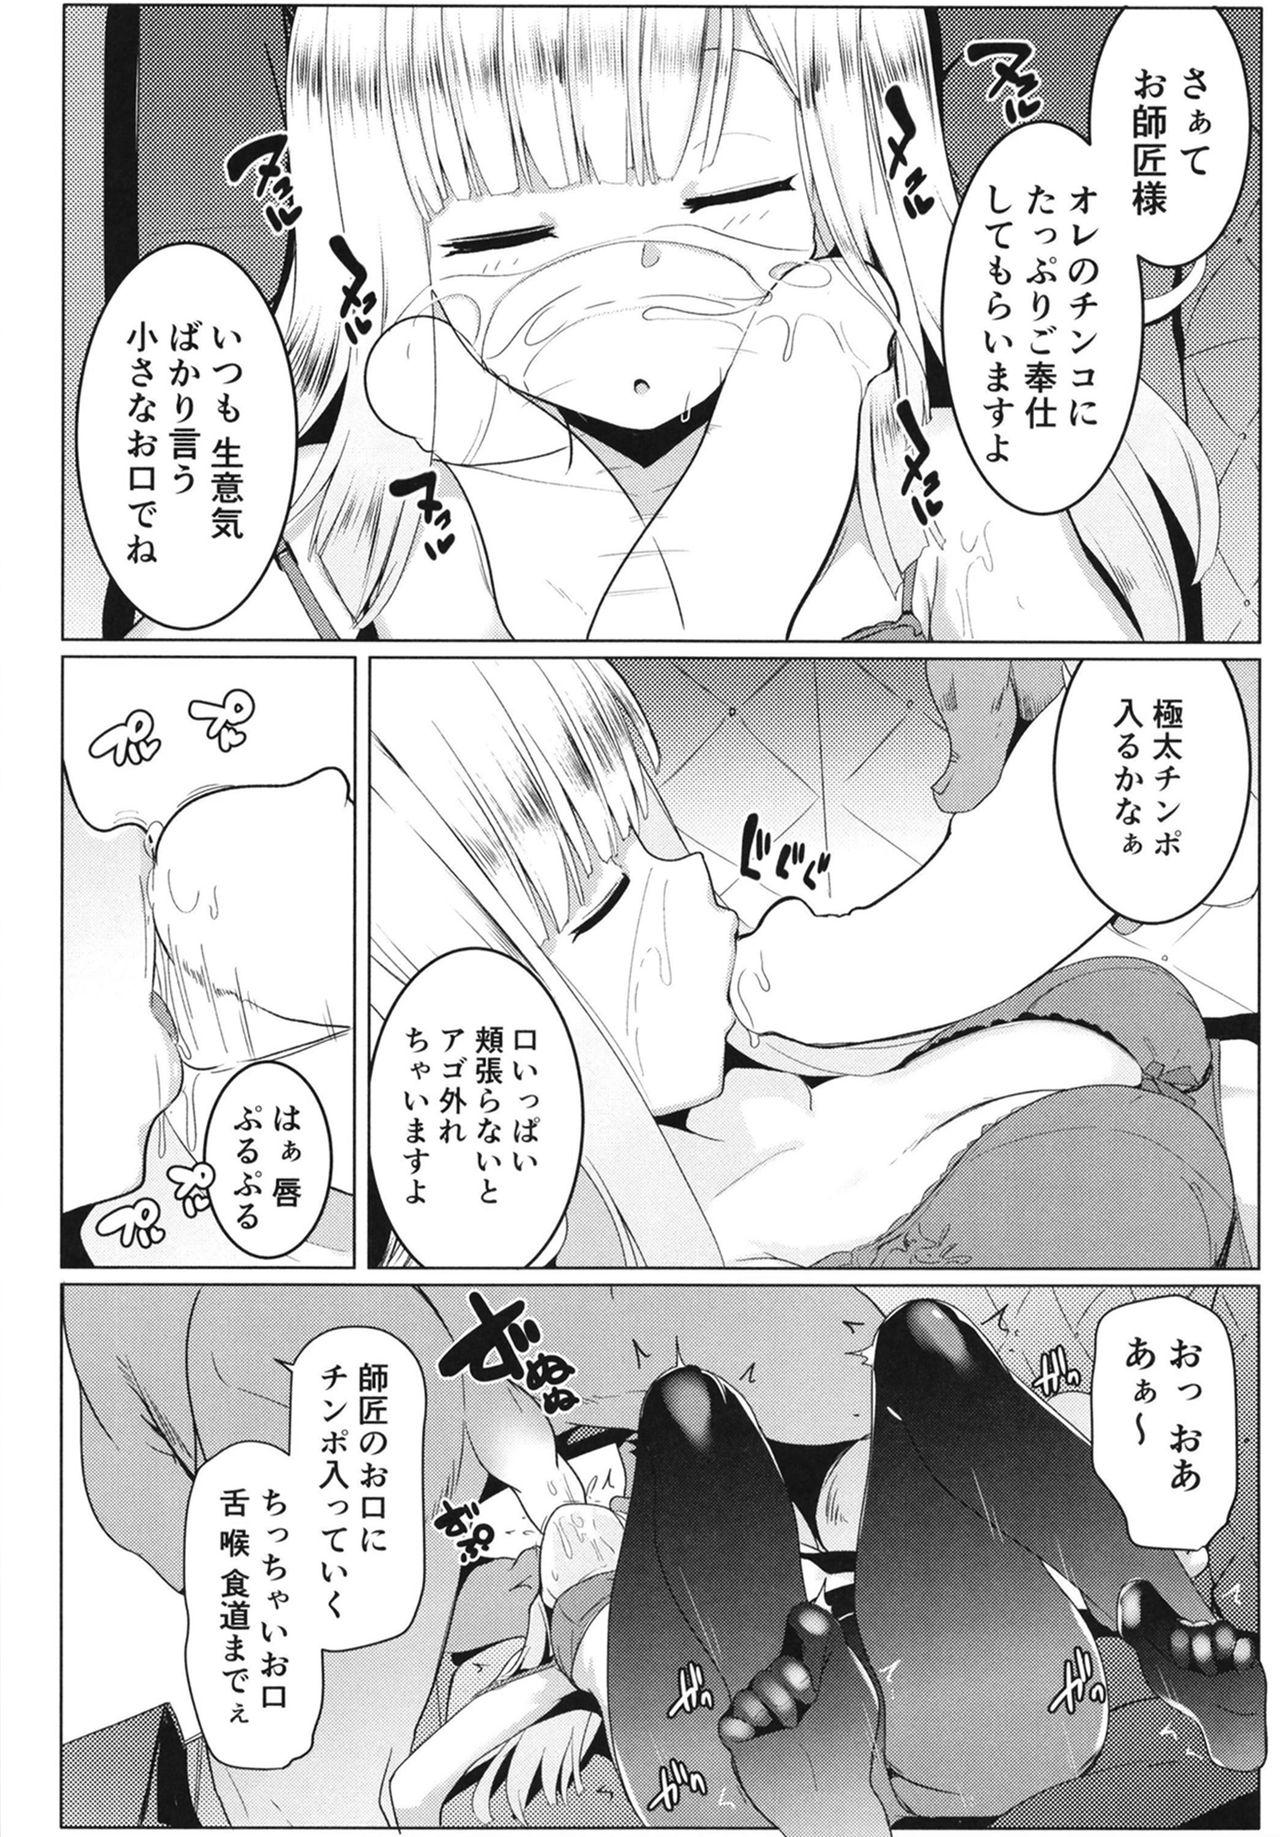 Behind Neoki no Shishou wa Tonikaku Eroi - Fate grand order Bisexual - Page 10